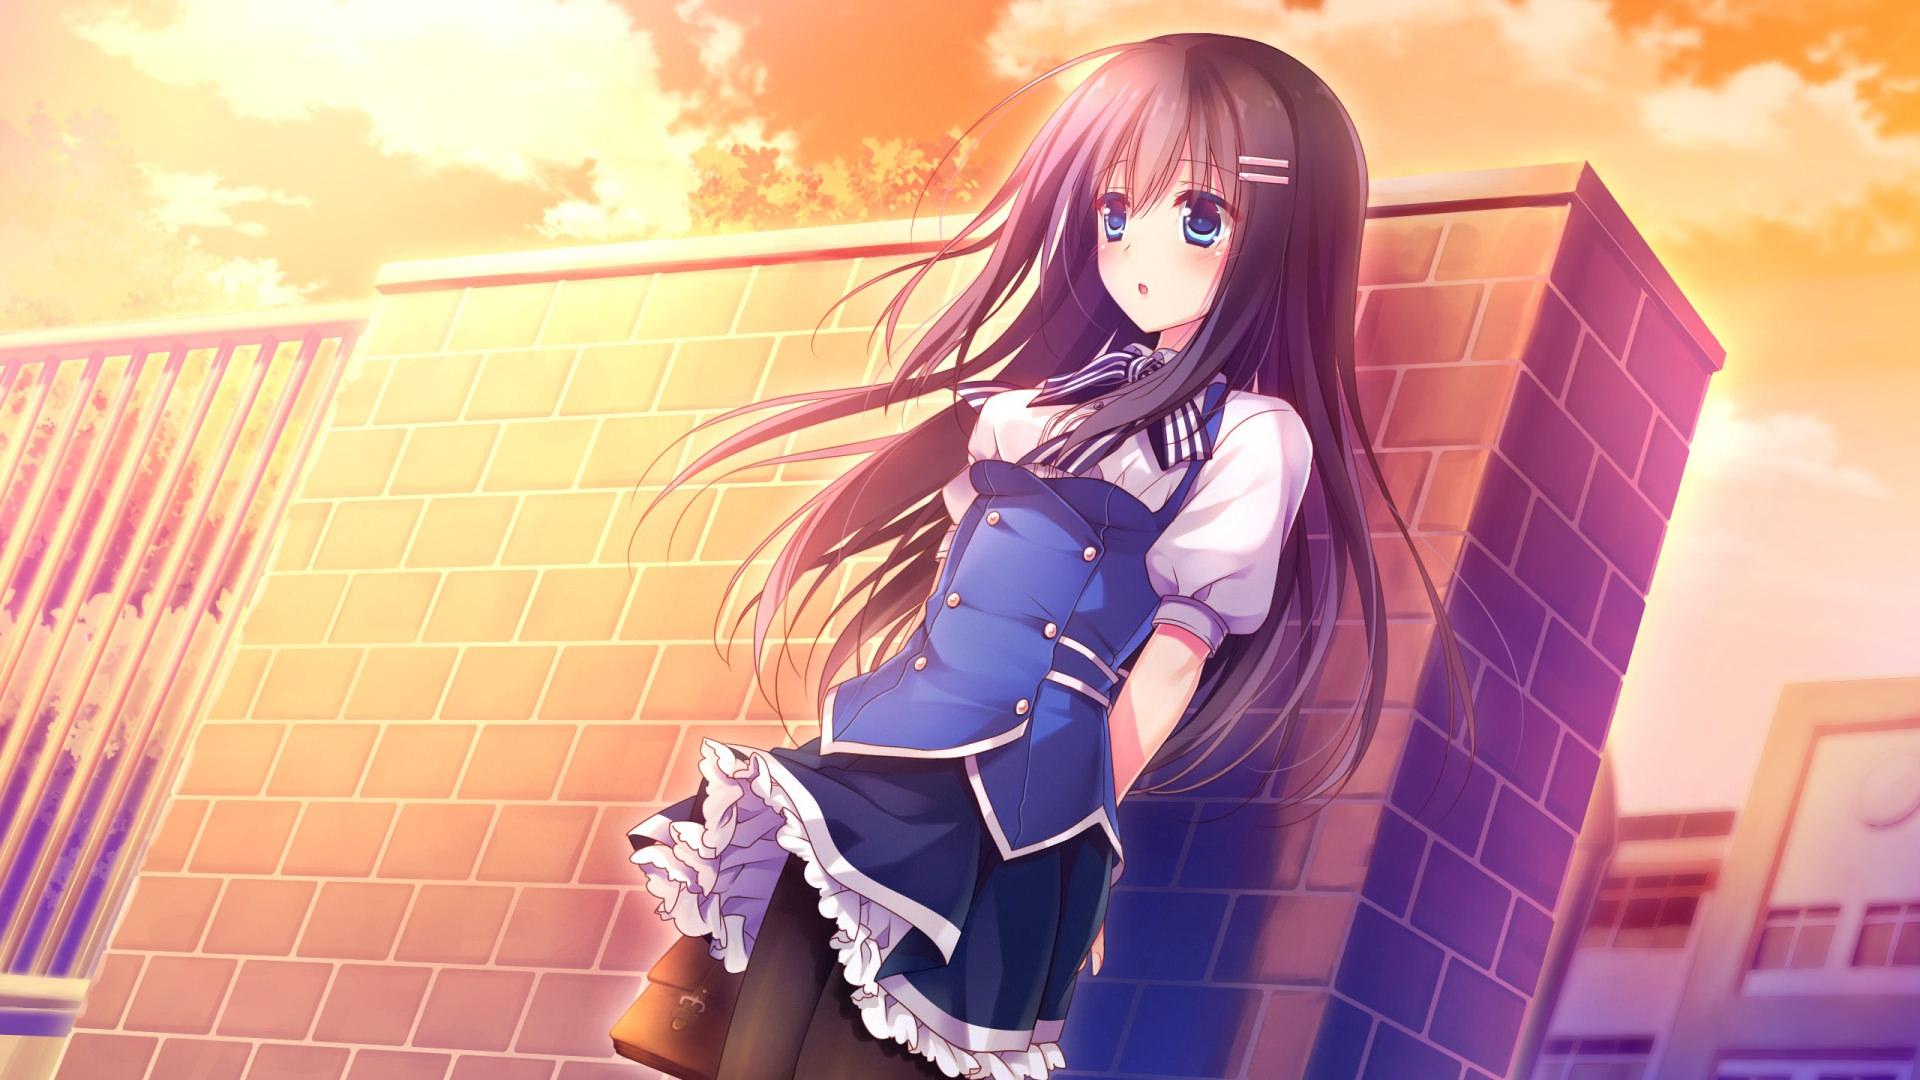 Anime School Girl Wallpaper Free Anime School Girl Background